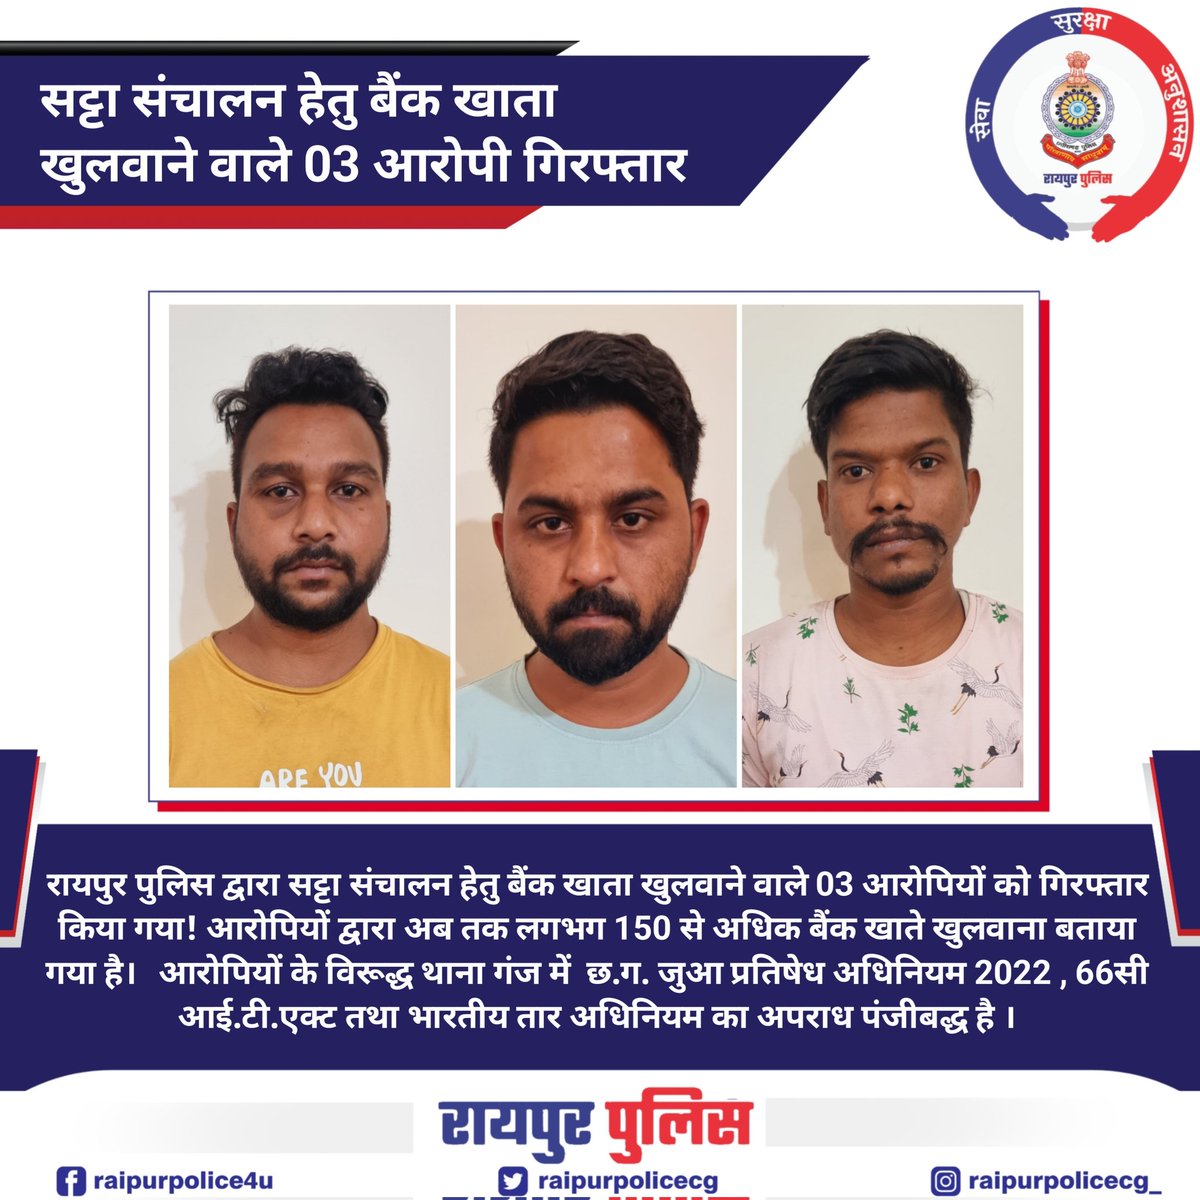 रायपुर पुलिस द्वारा सट्टा संचालन हेतु बैंक खाता खुलवाने वाले 03 आरोपियों को गिरफ्तार किया गया!आरोपियों के विरूद्ध थाना गंज में छ.ग. जुआ प्रतिषेध अधिनियम , 66सी आई.टी.एक्ट तथा भारतीय तार अधिनियम का अपराध पंजीबद्ध है । #raipurpolice #raipur